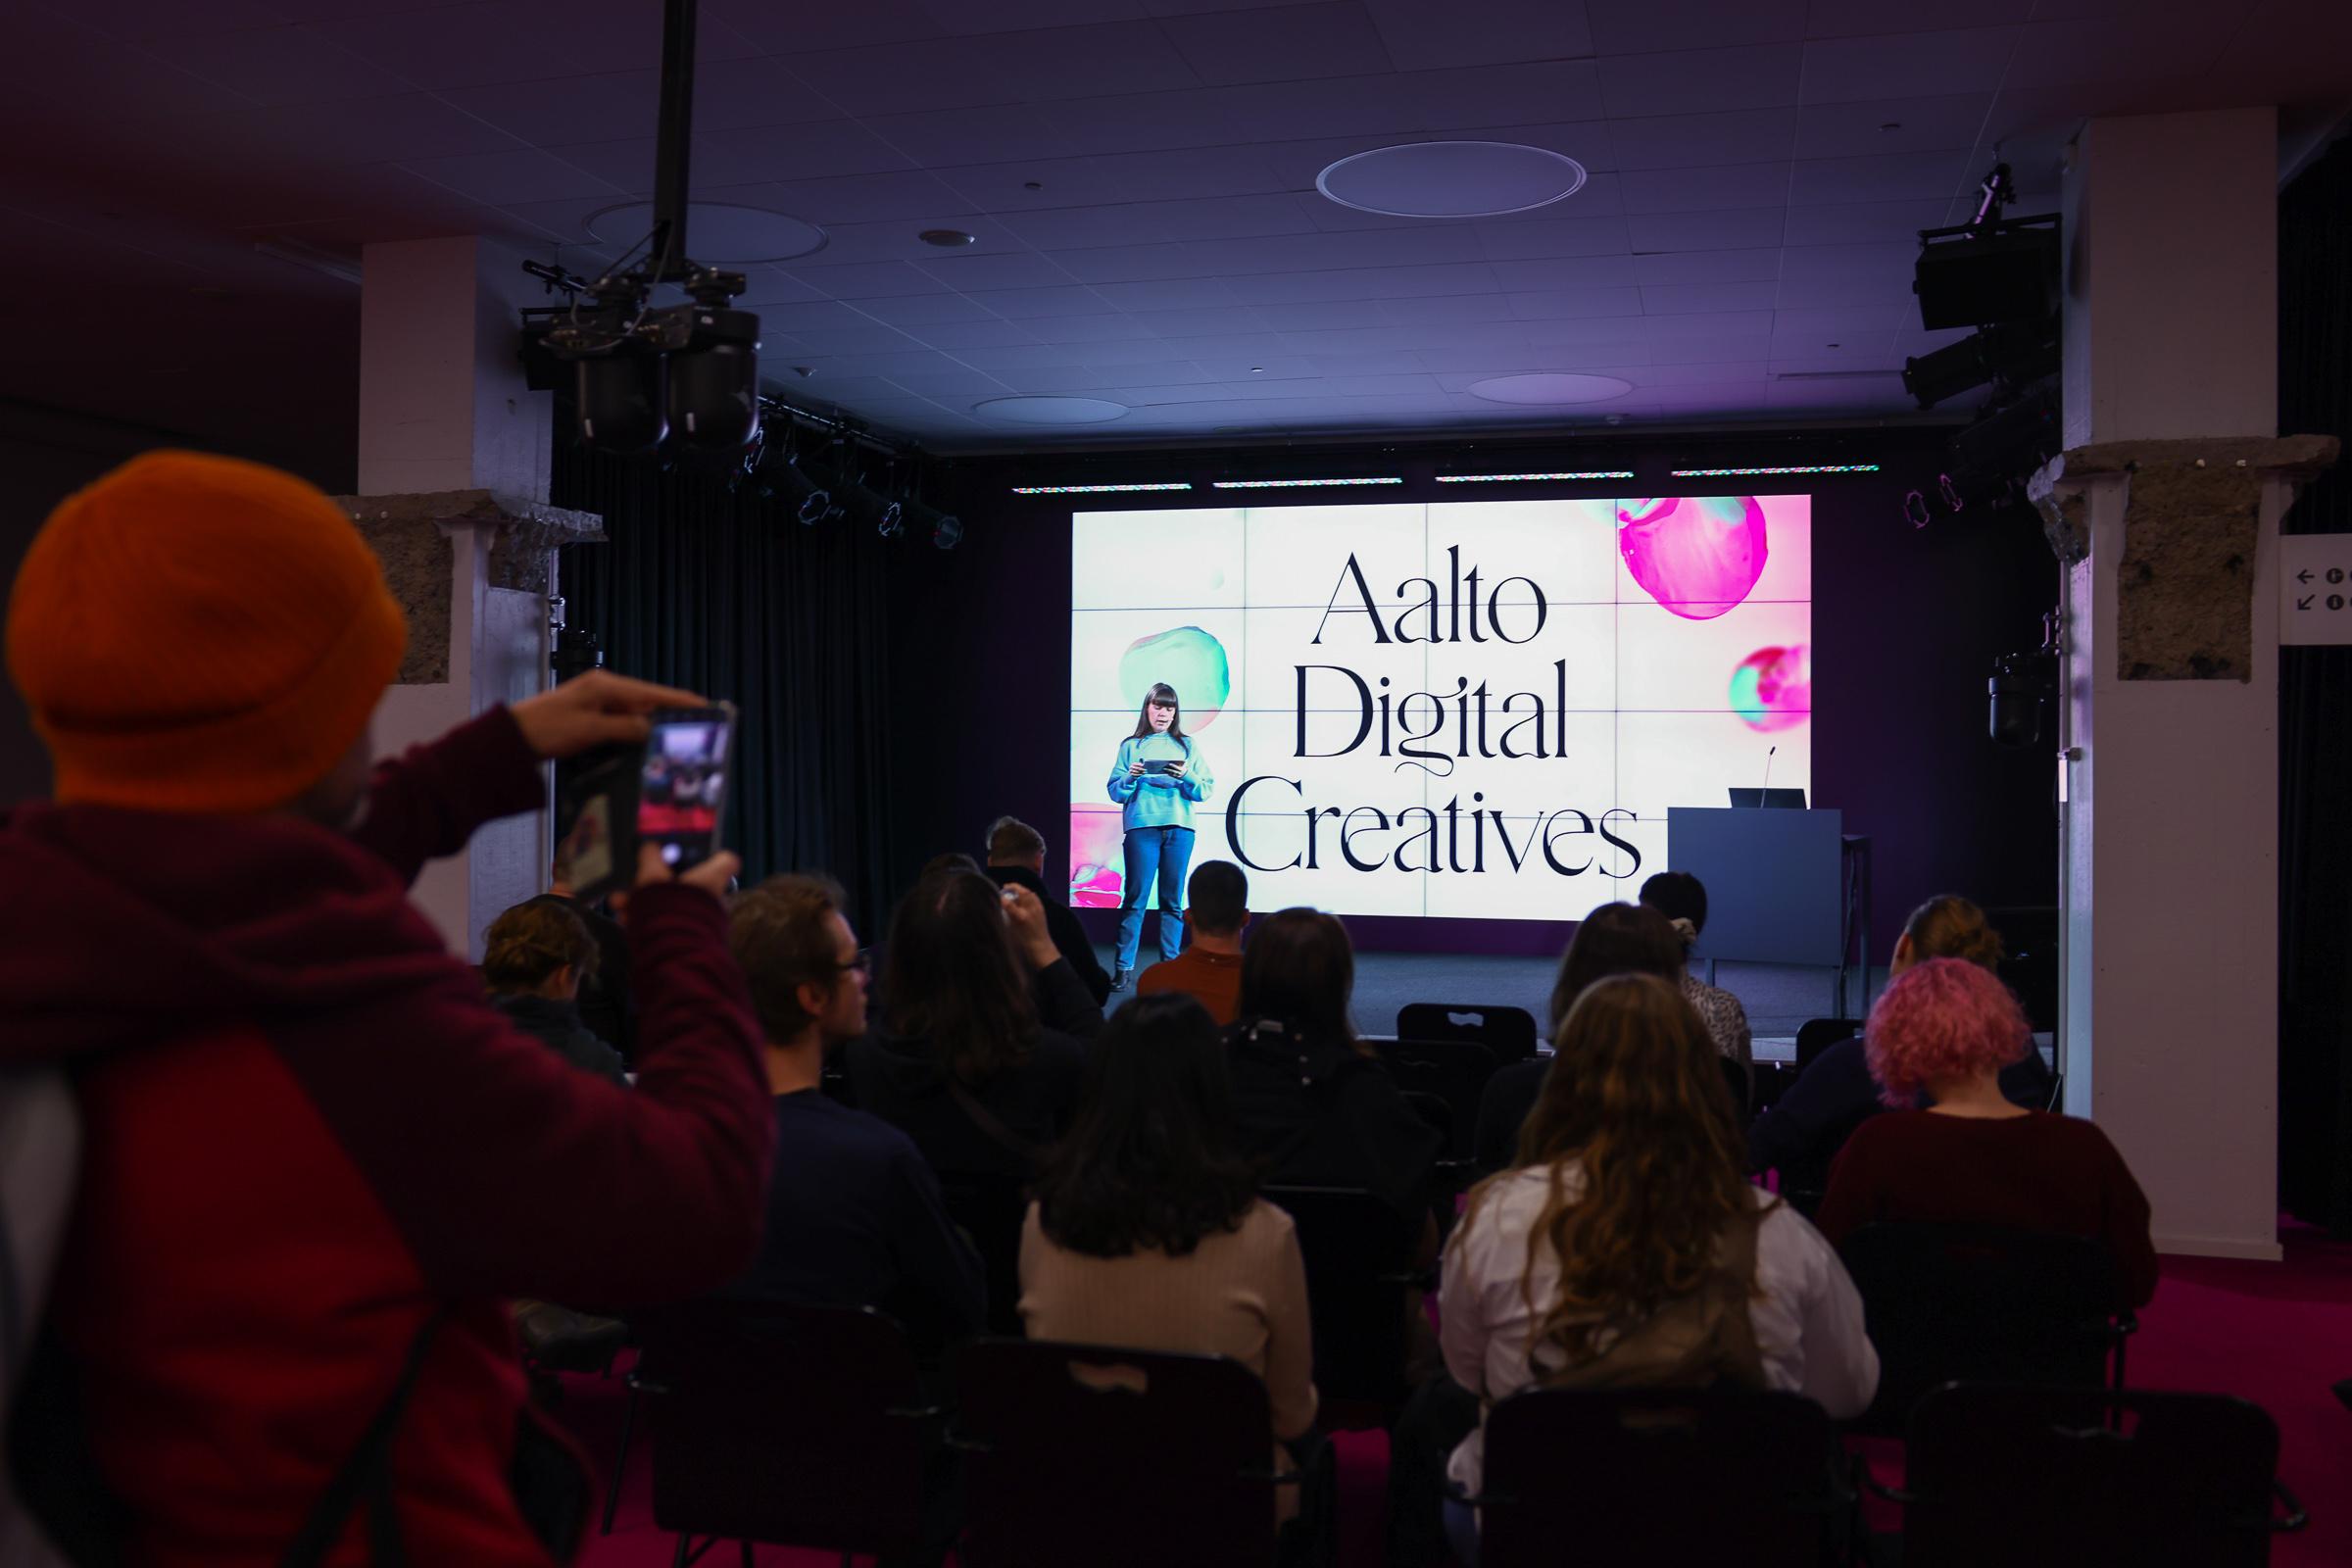 Aalto Digital Creatives on Hybrid Stage